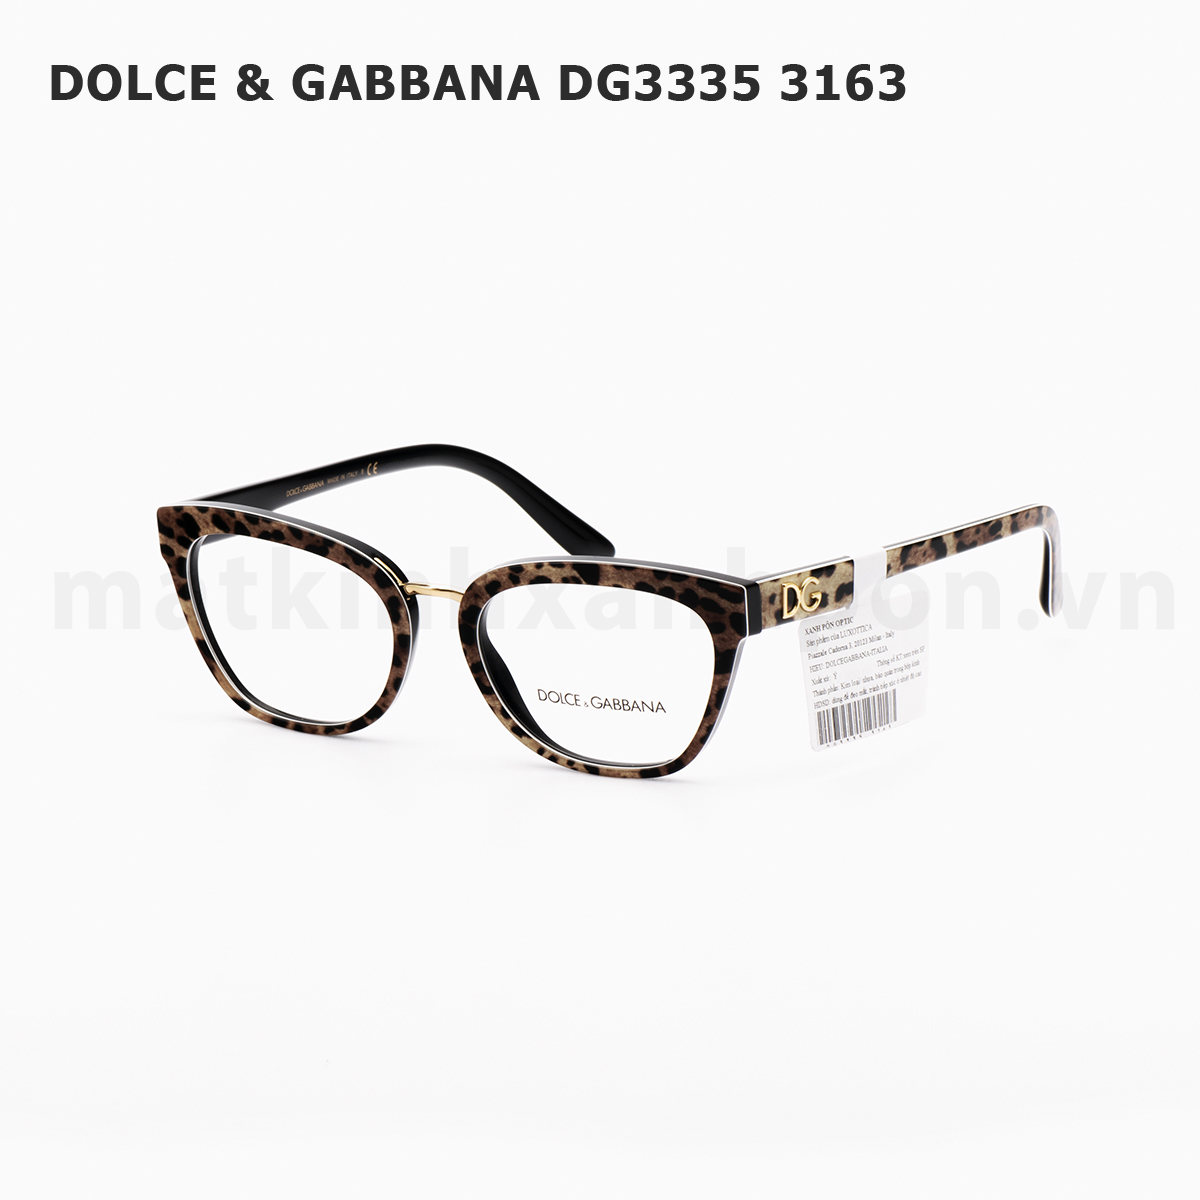 Dolce & Gabbana DG3335 3163